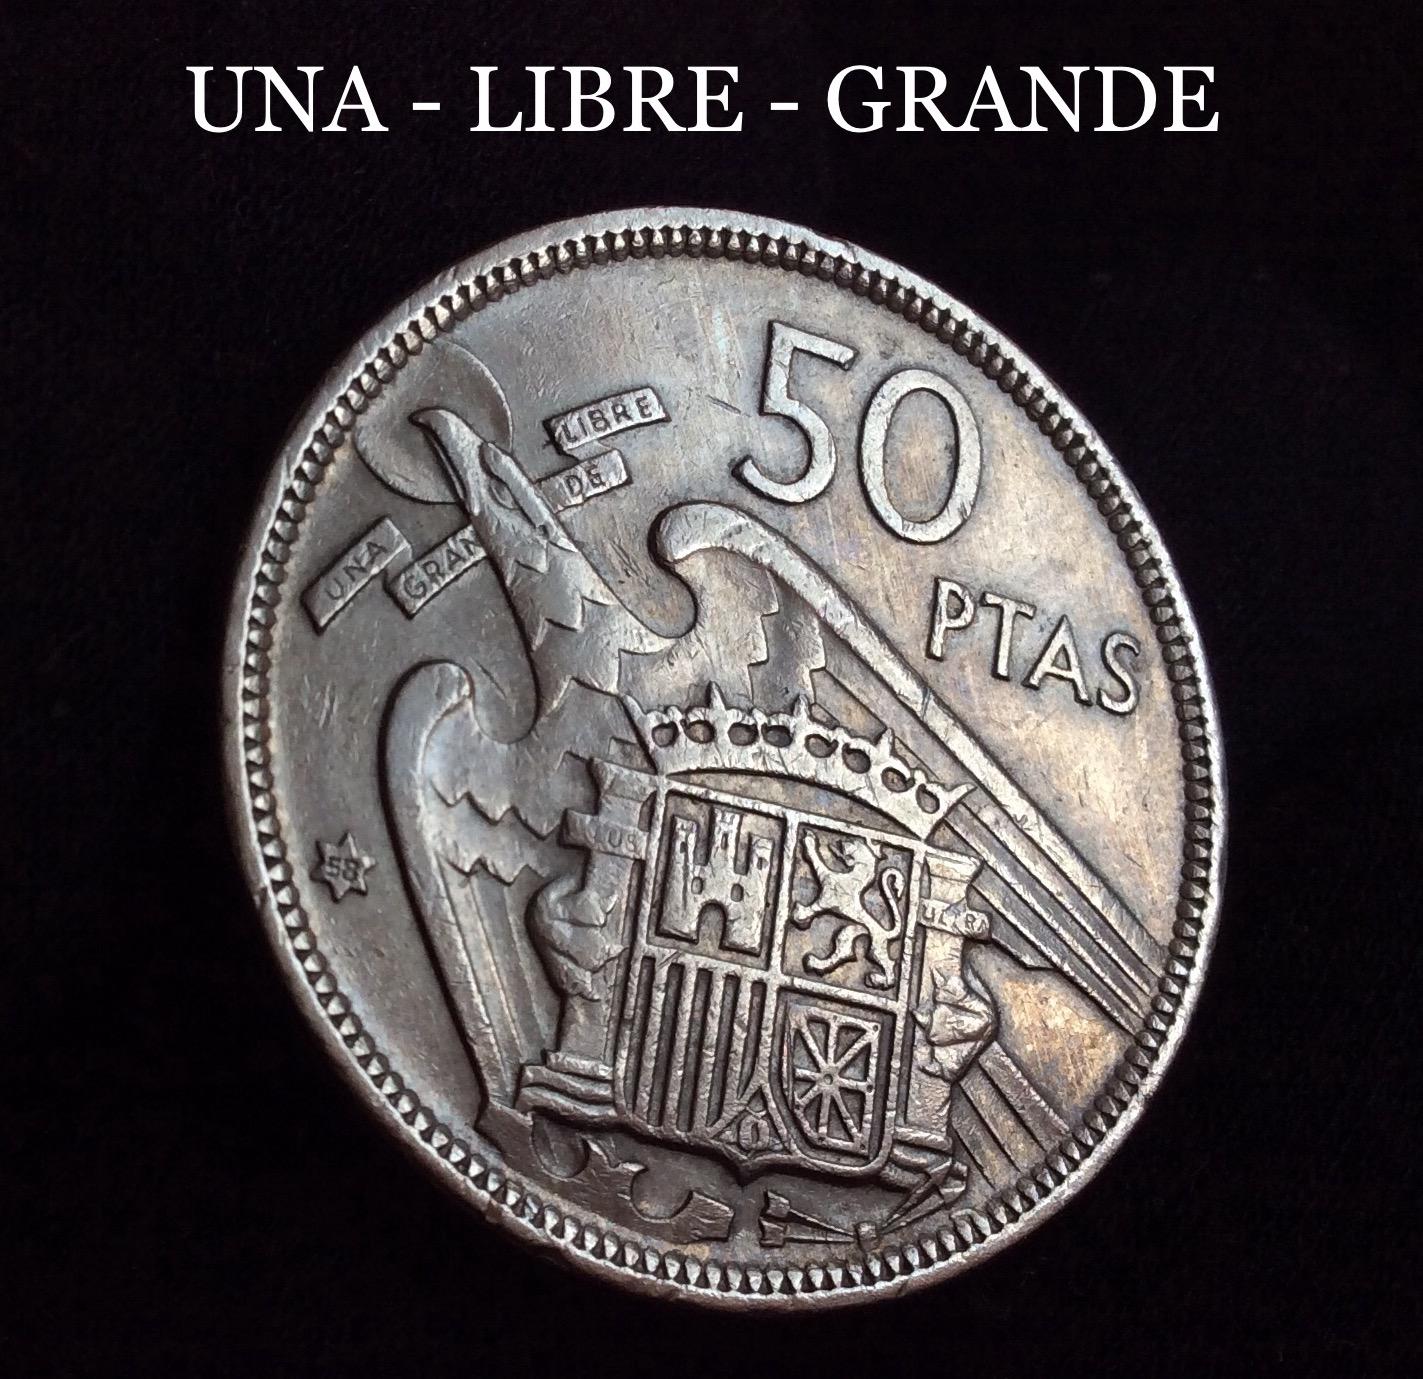 50 PESETAS 1957*58 - UNA LIBRE GRANDE - MUY ESCASA